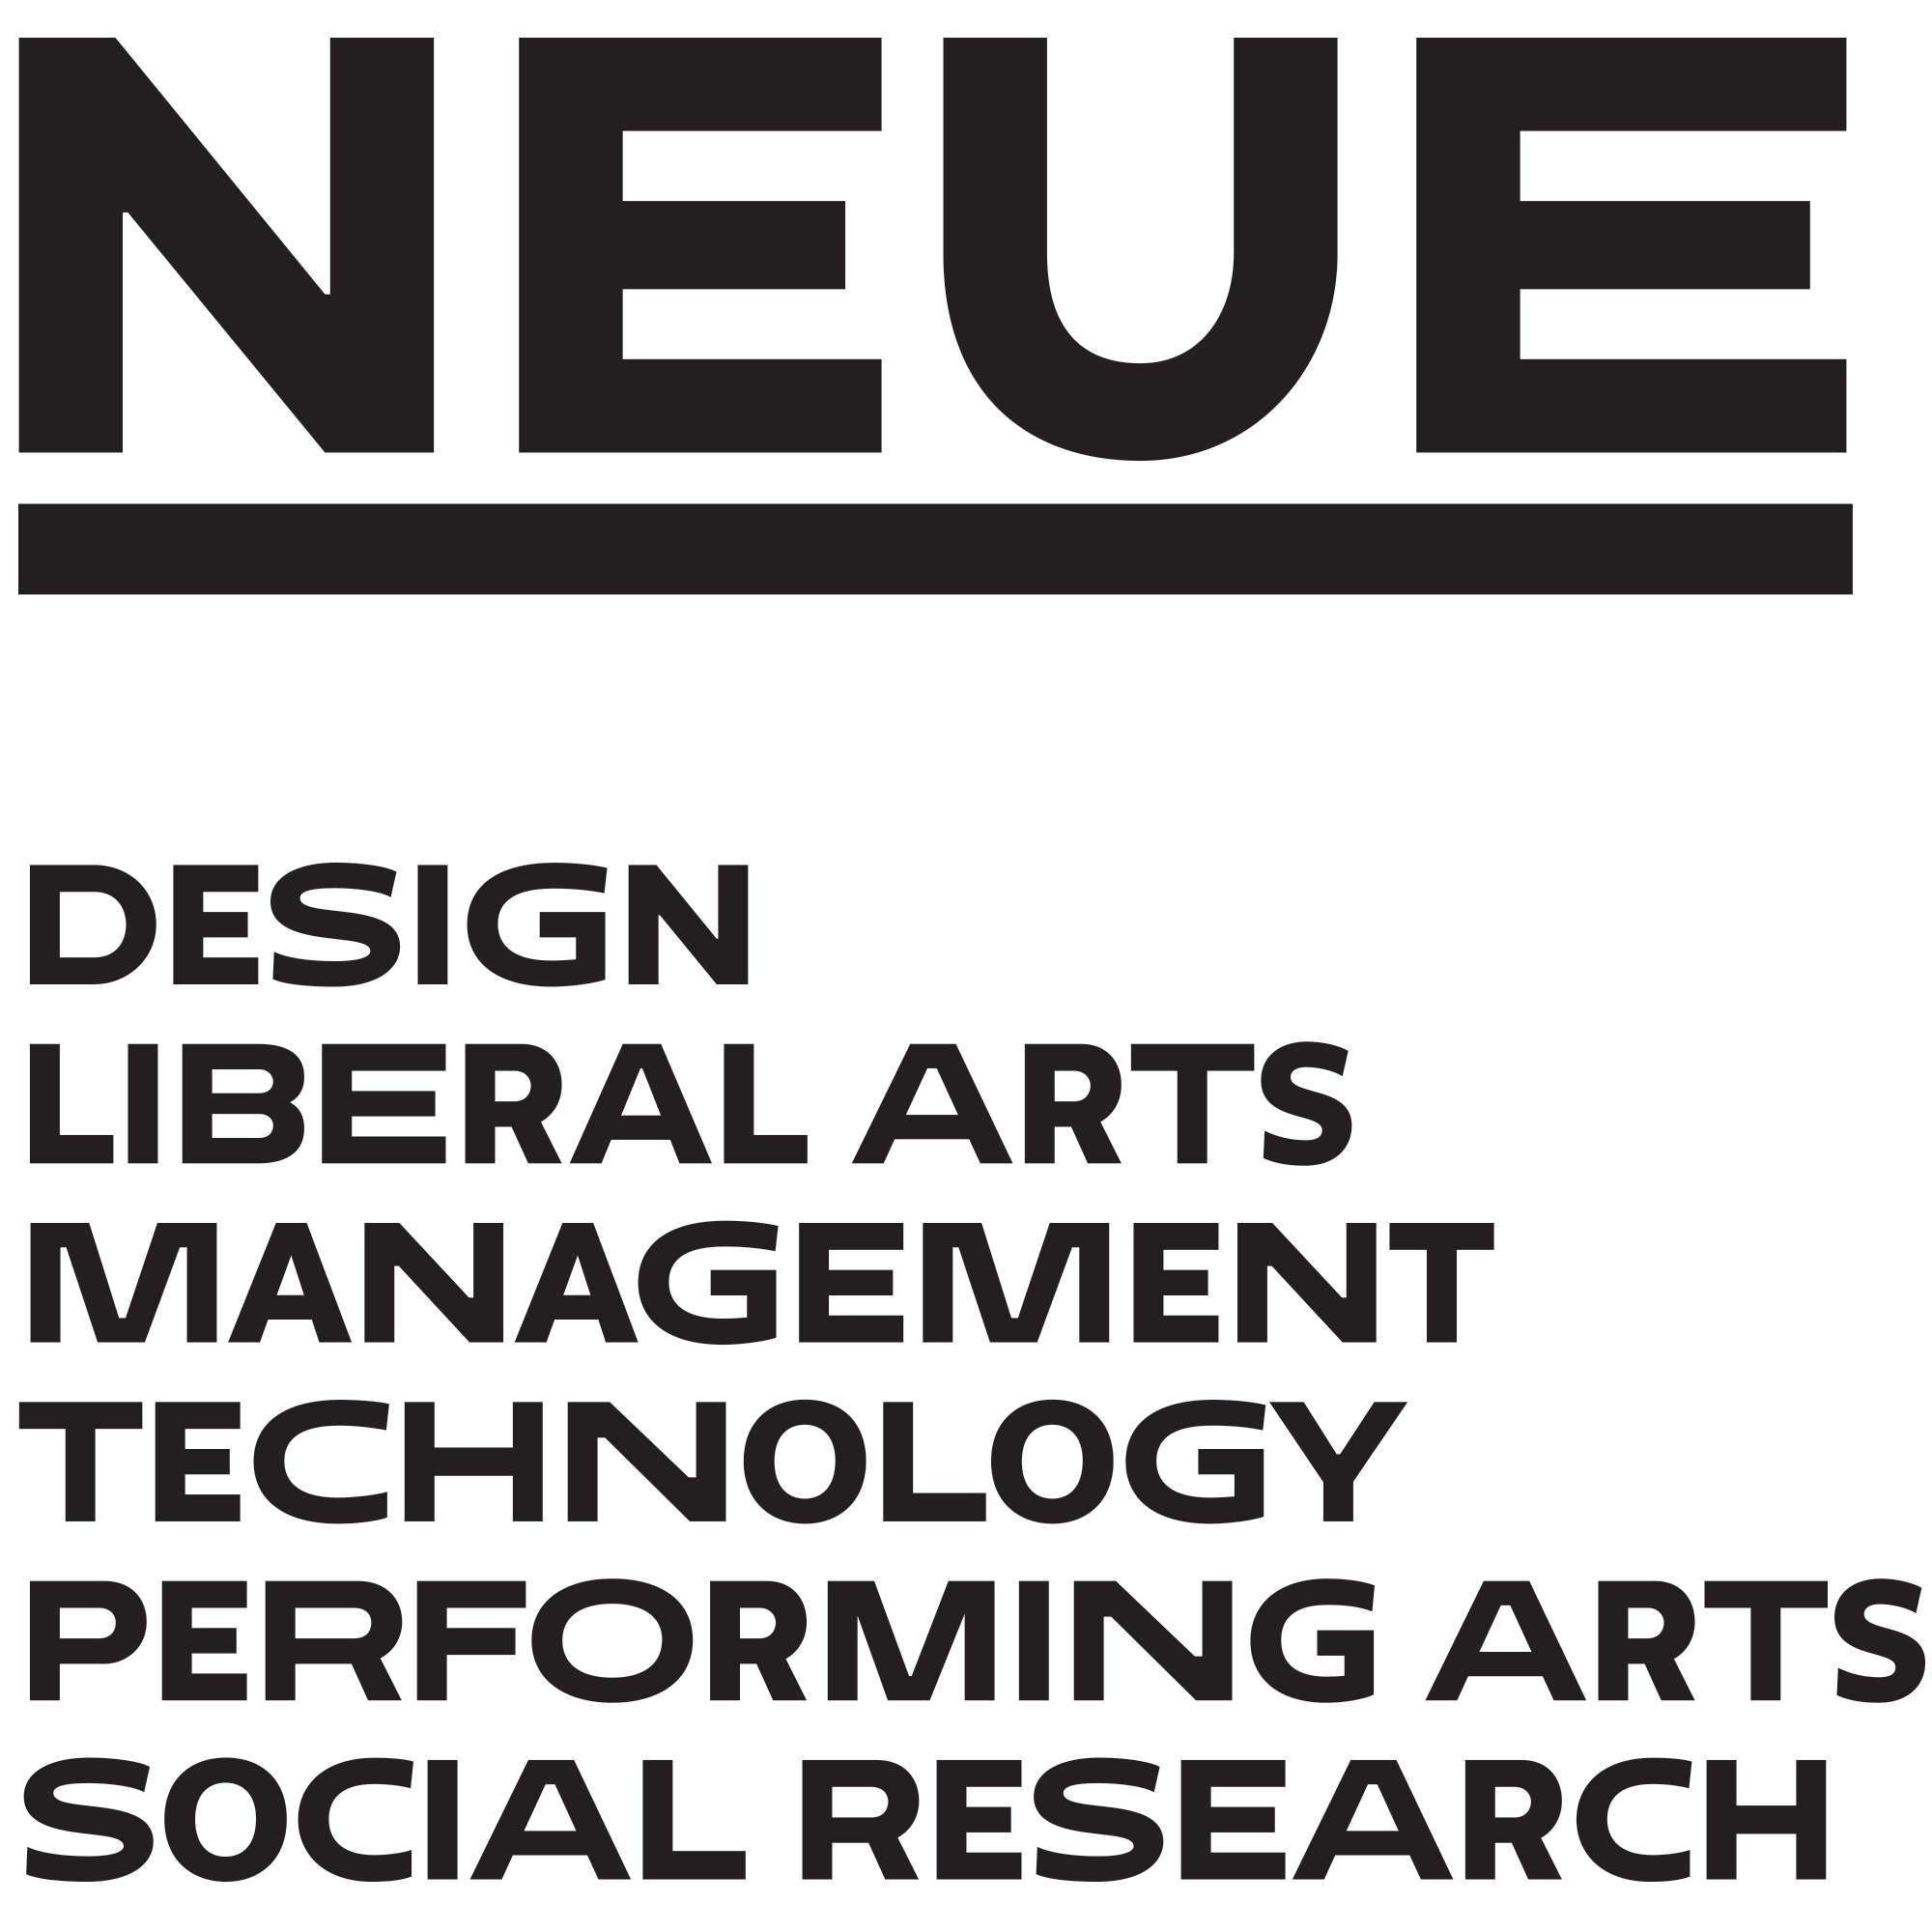 Пример шрифта Neue